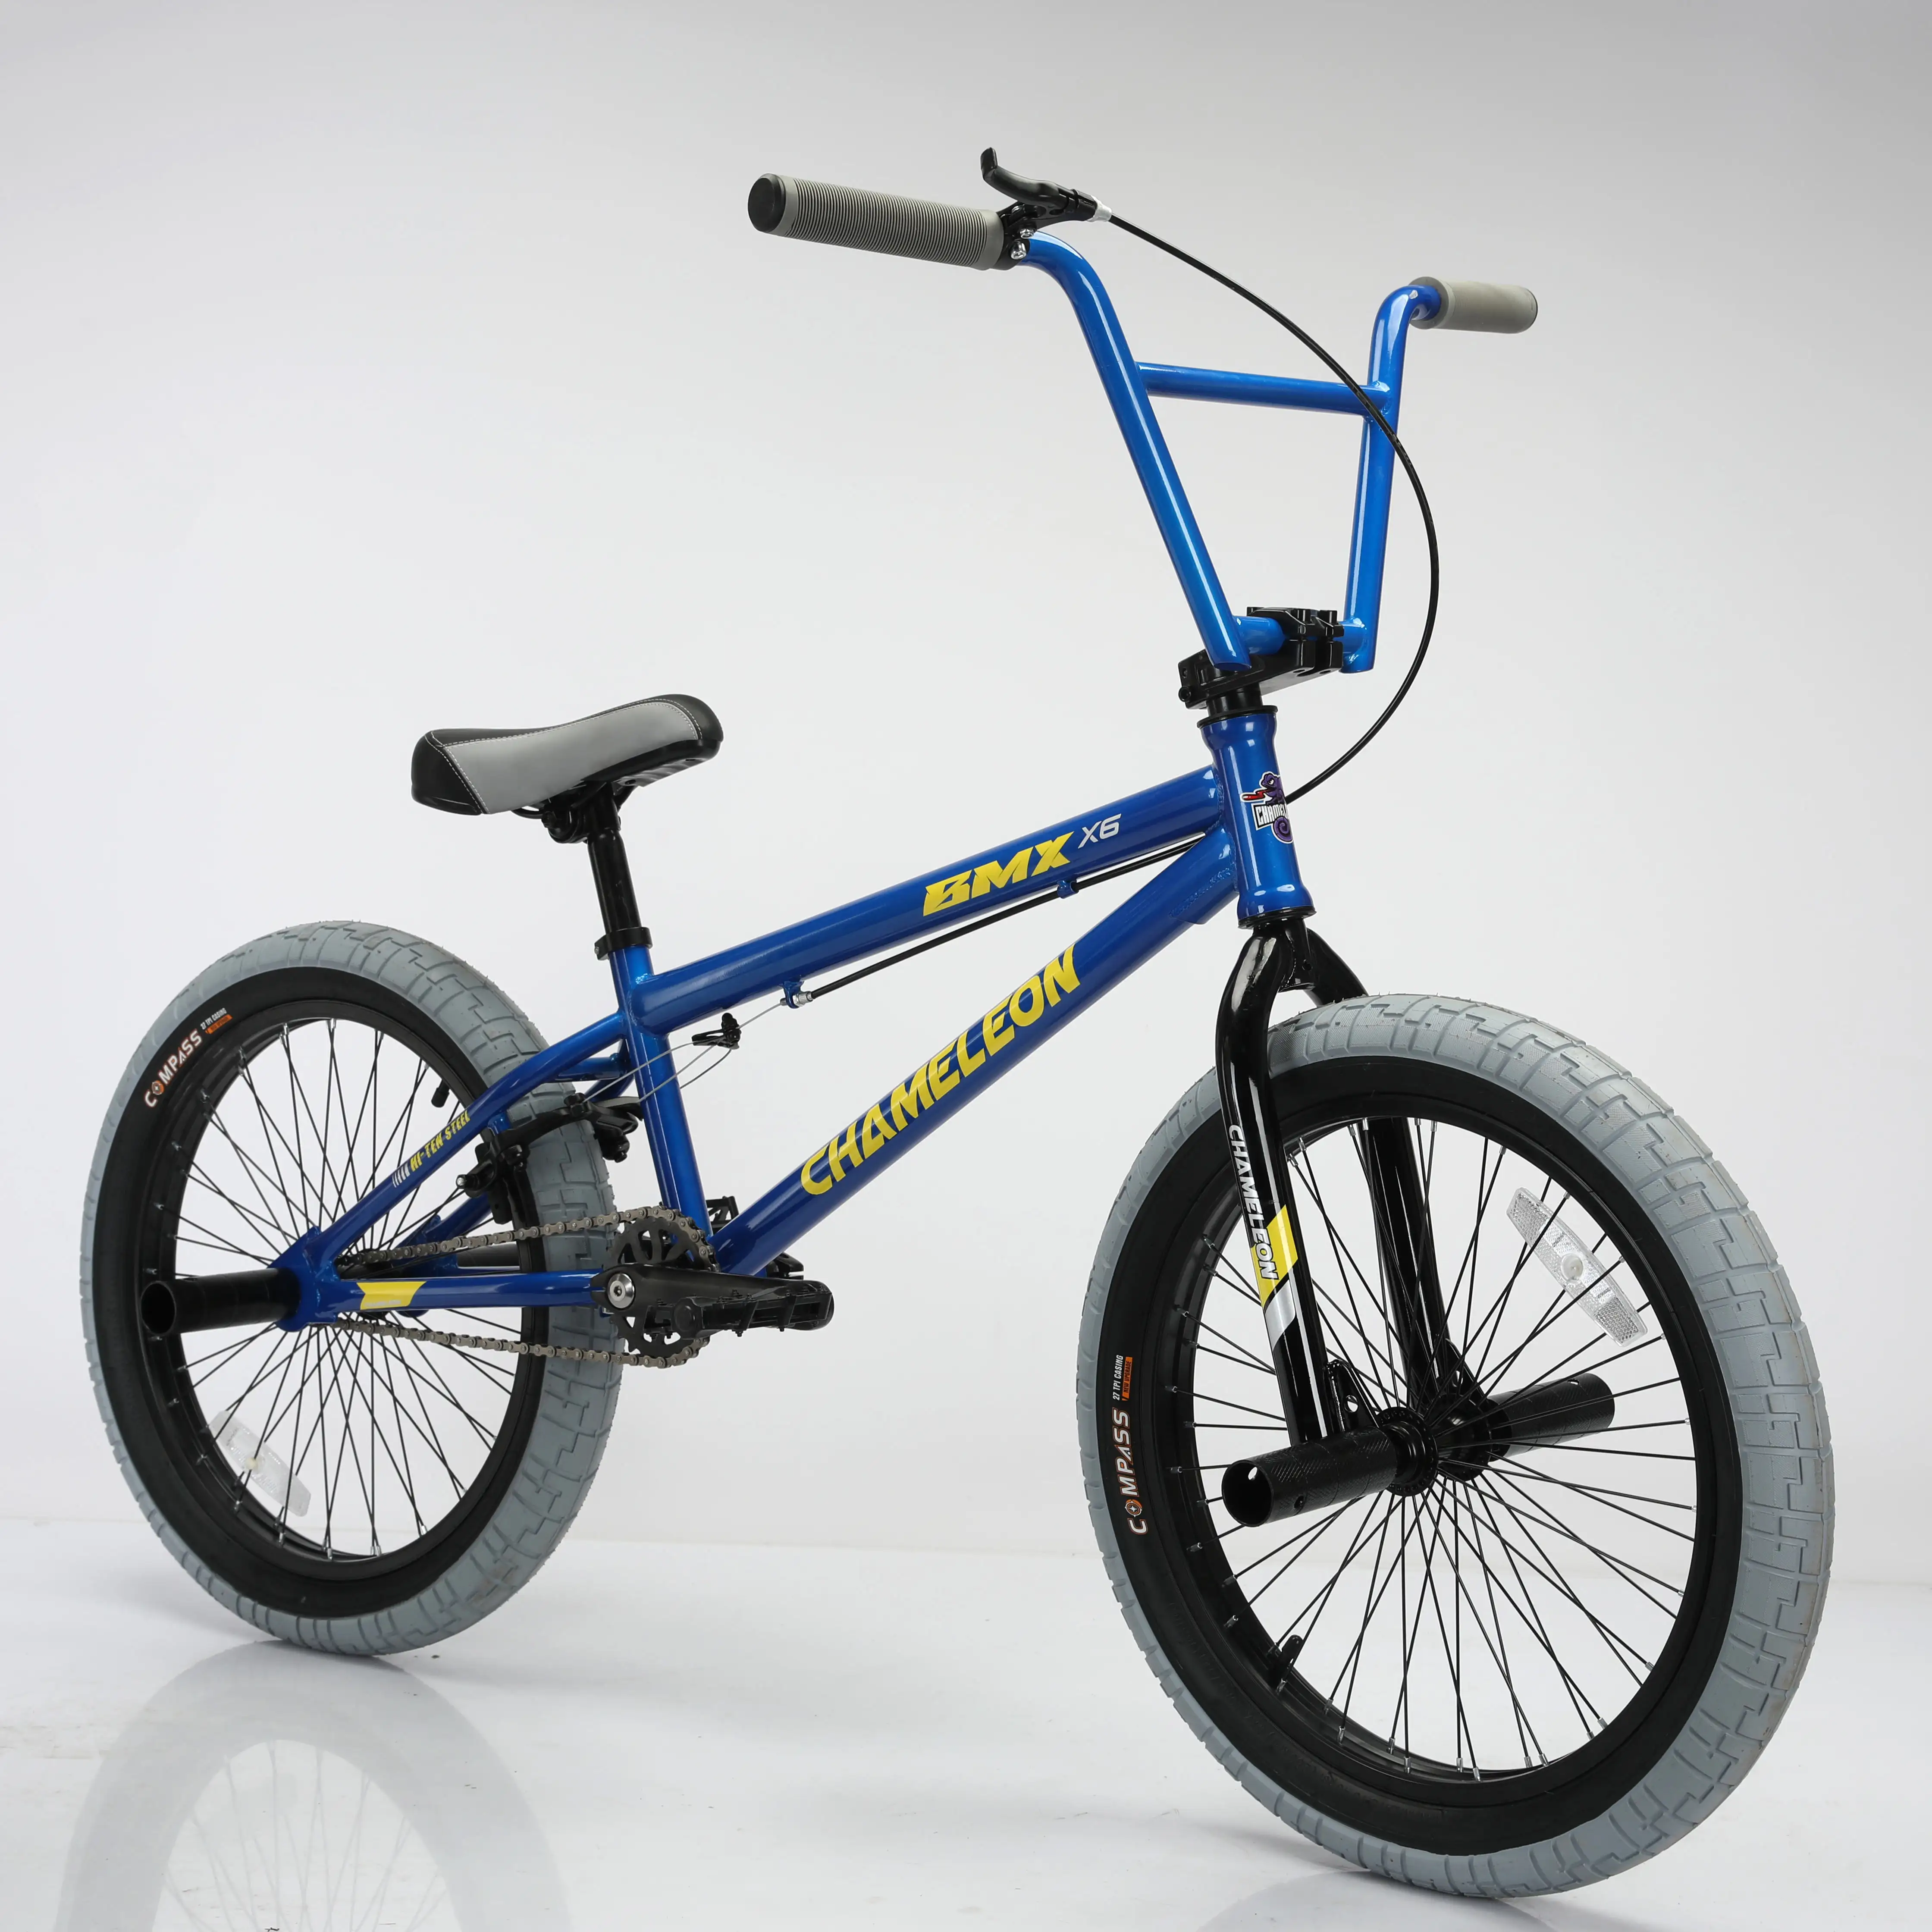 Vente chaude BMX vélo populaire nouveau design enfants vélo 20 pouces BMX vélos pour enfants vélo de bonne qualité avec frein à disque